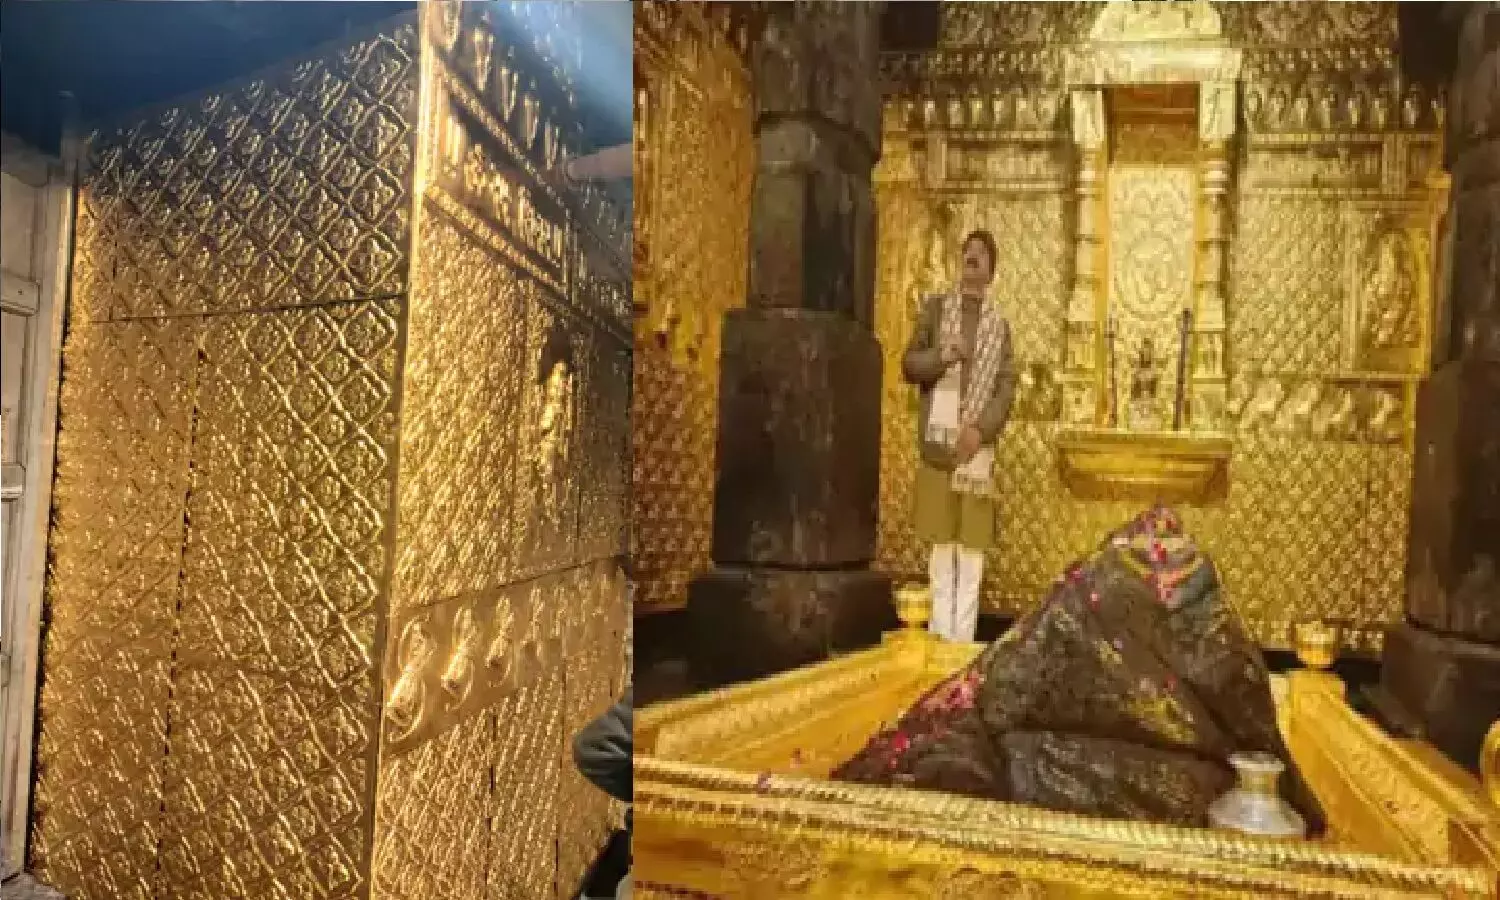 केदारनाथ मंदिर से 23 किलो सोना चोरी: दीवारों पर सोने की जगह गोल्ड पोलिश!  सरकार ने जांच कमेटी बनाई